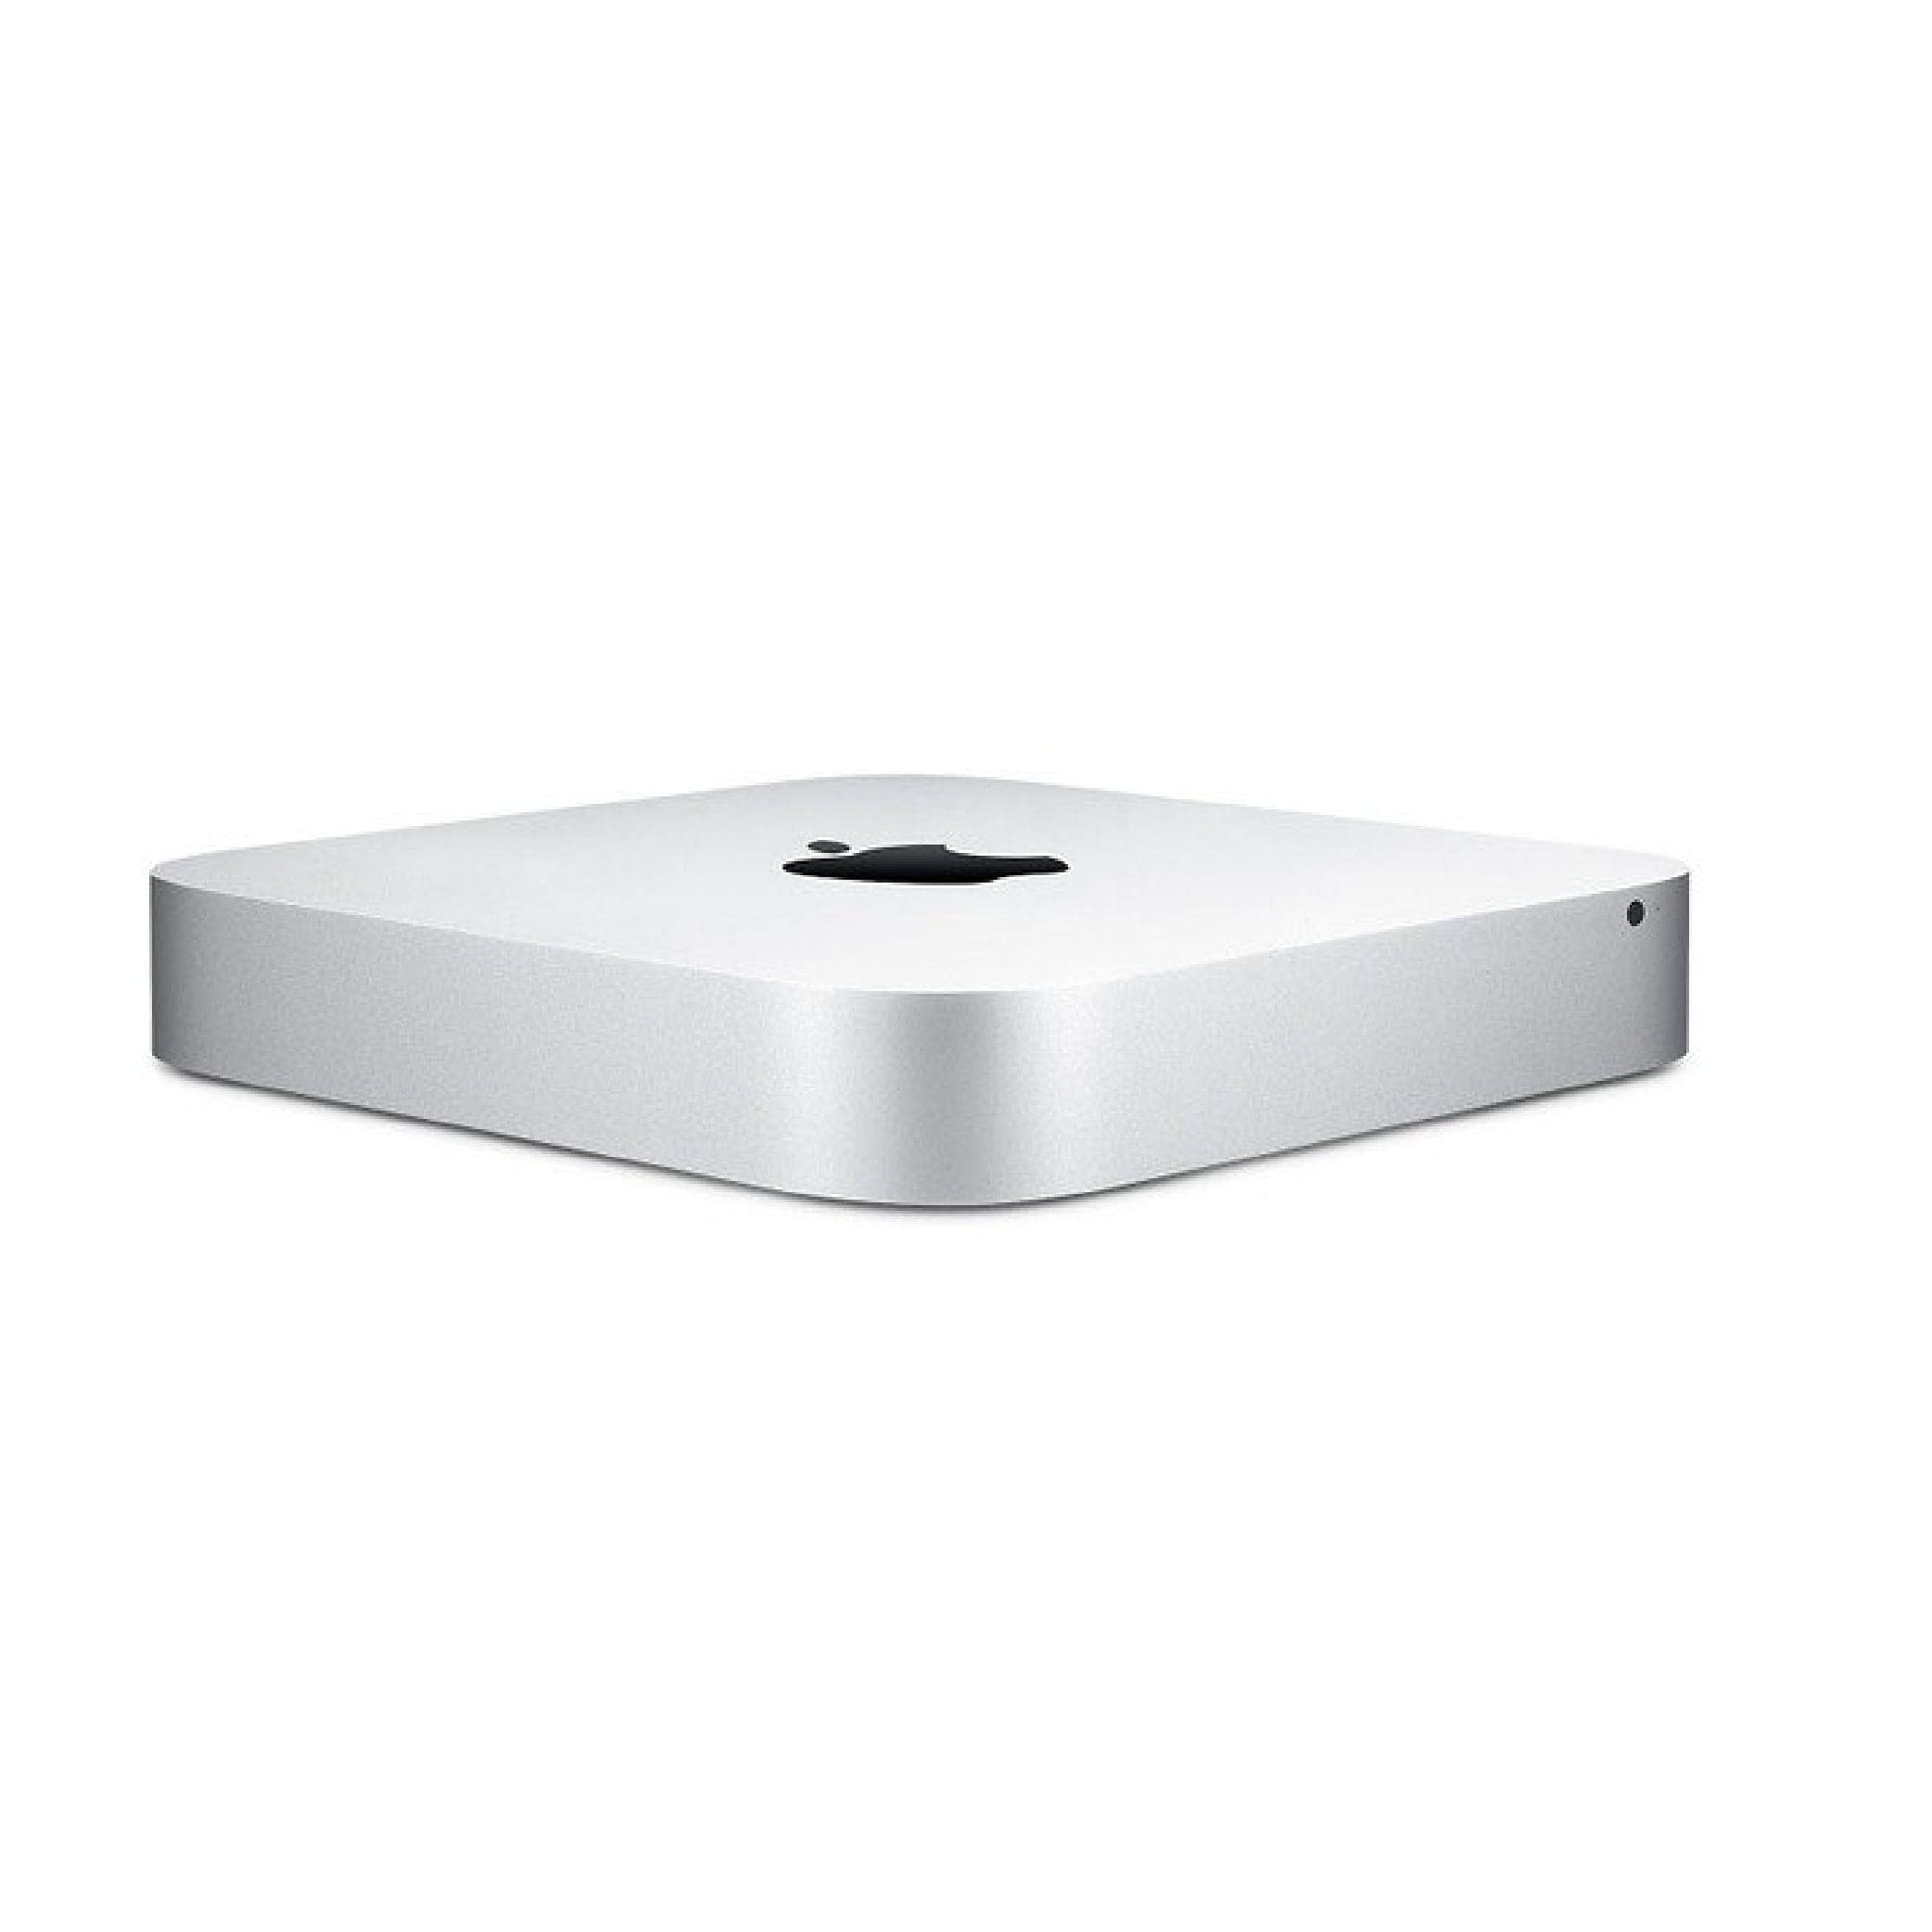 Mac Mini Core i5 2.6GHz (2014)MGEN2LL/A- 1TB / 8GB RAM